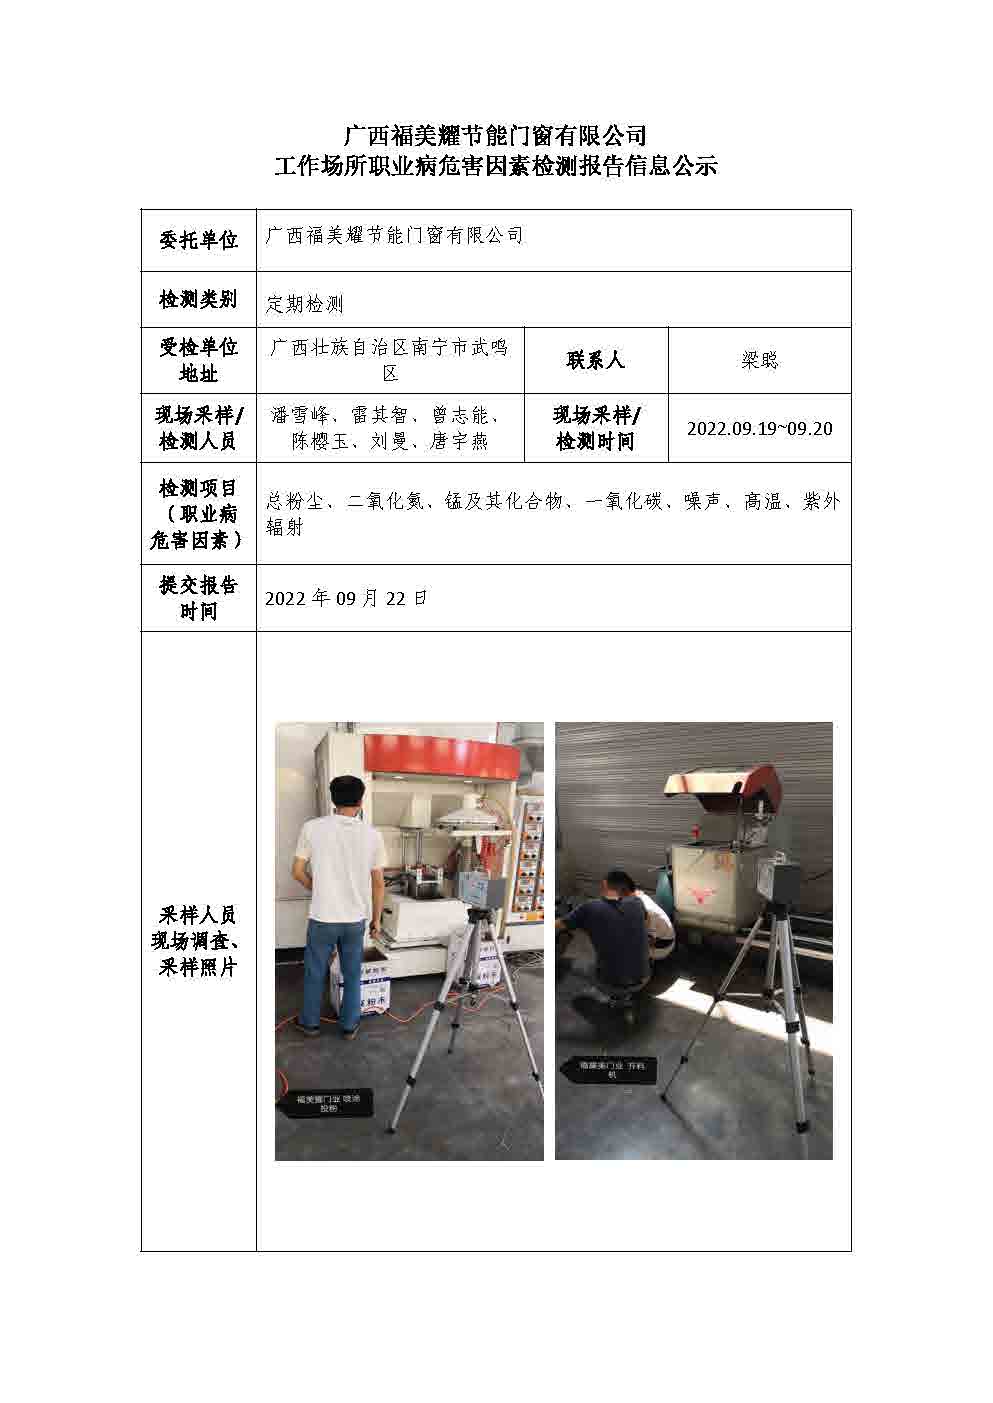 广西福美耀节能门窗有限公司工作场所职业病危害因素检测报告信息公示